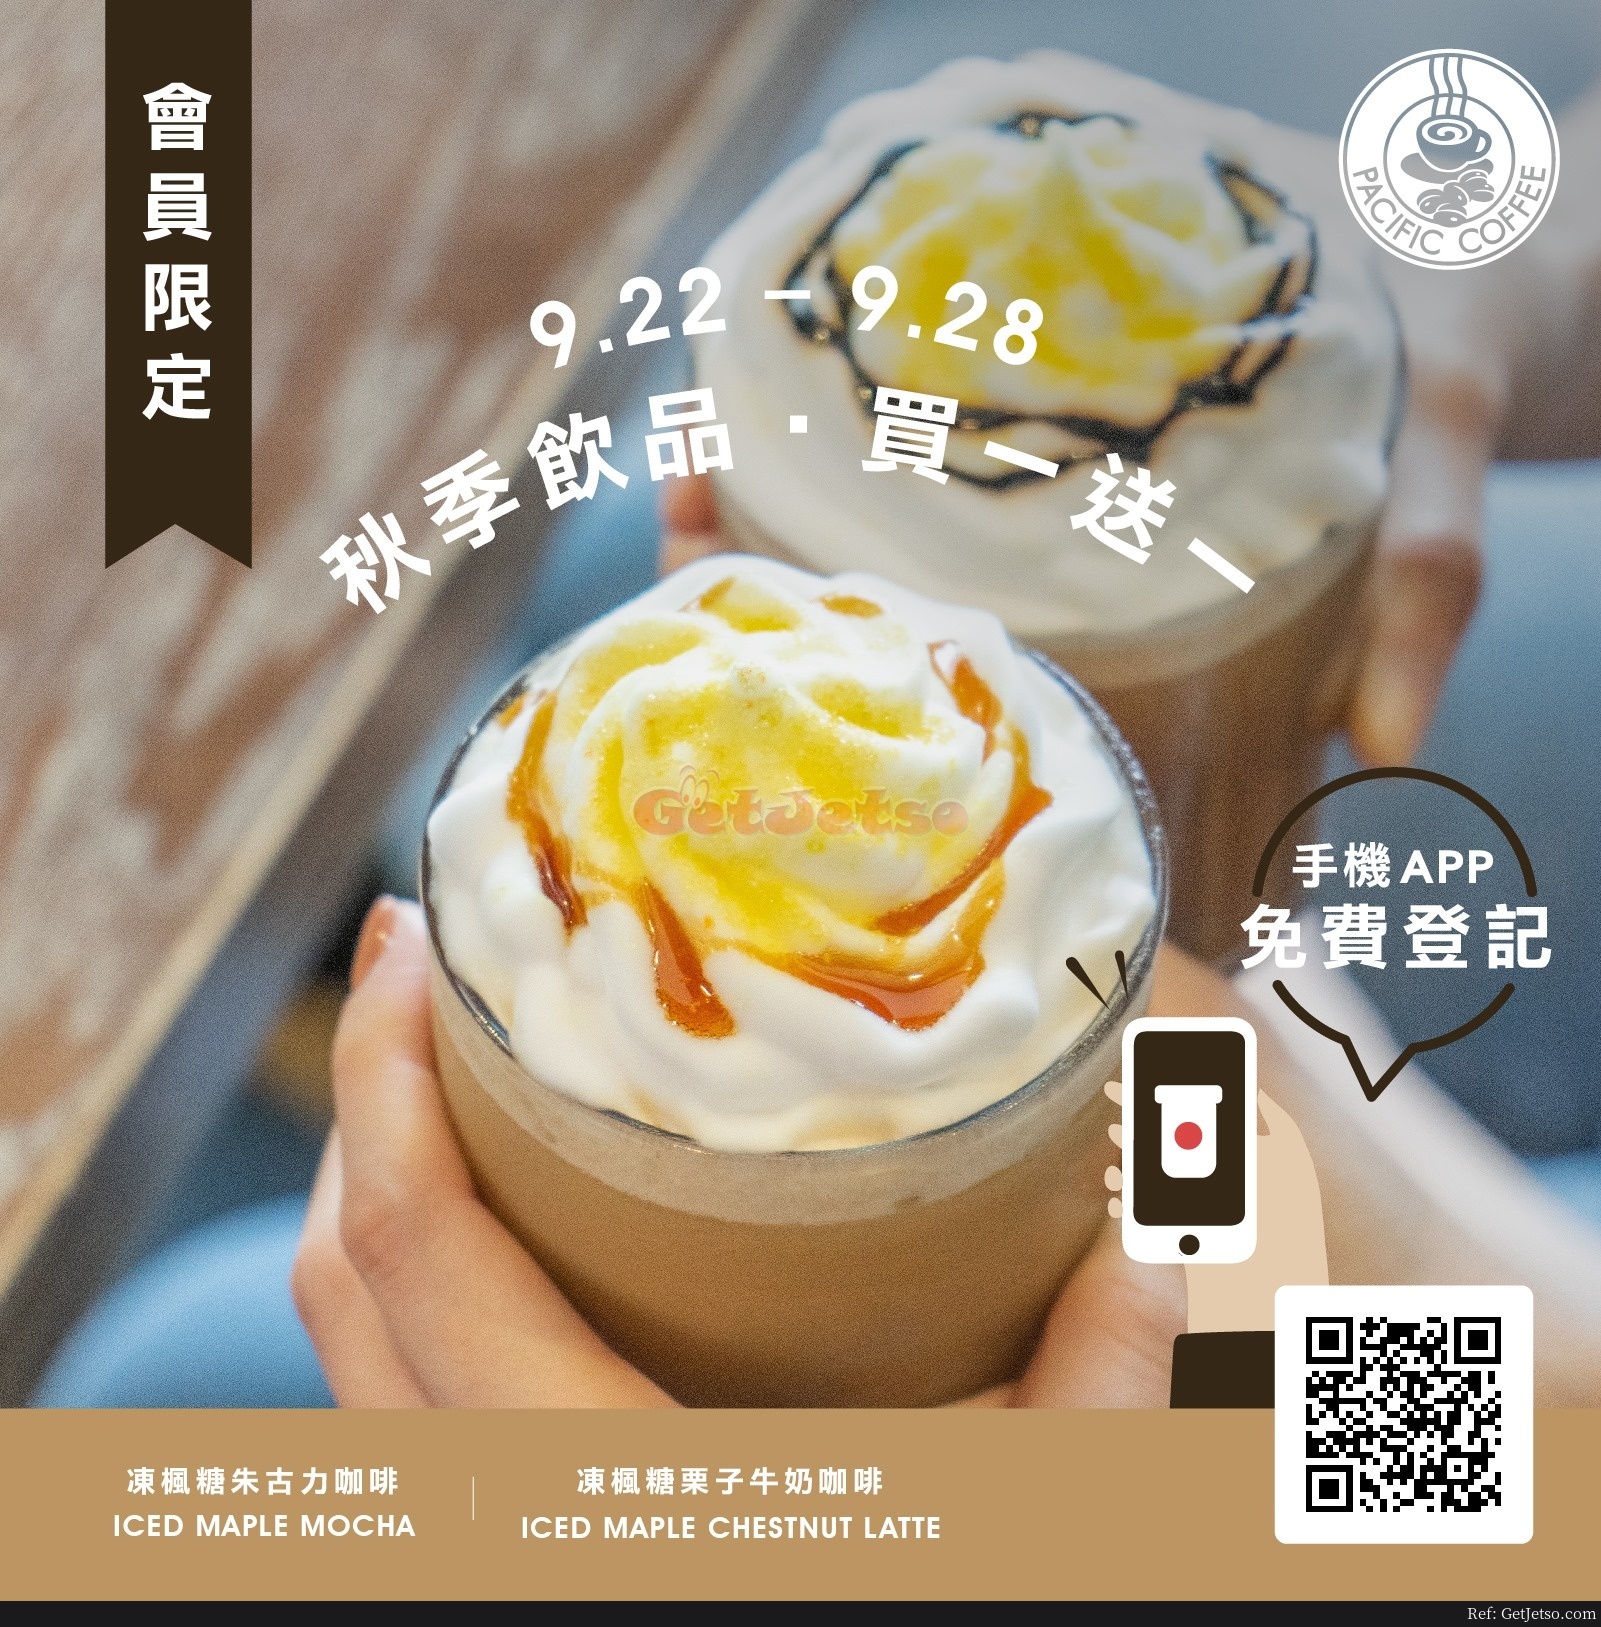 Pacific Coffee 會員凍楓糖栗子牛奶咖啡、朱古力咖啡買1送1優惠(20年9月22-28日)圖片1